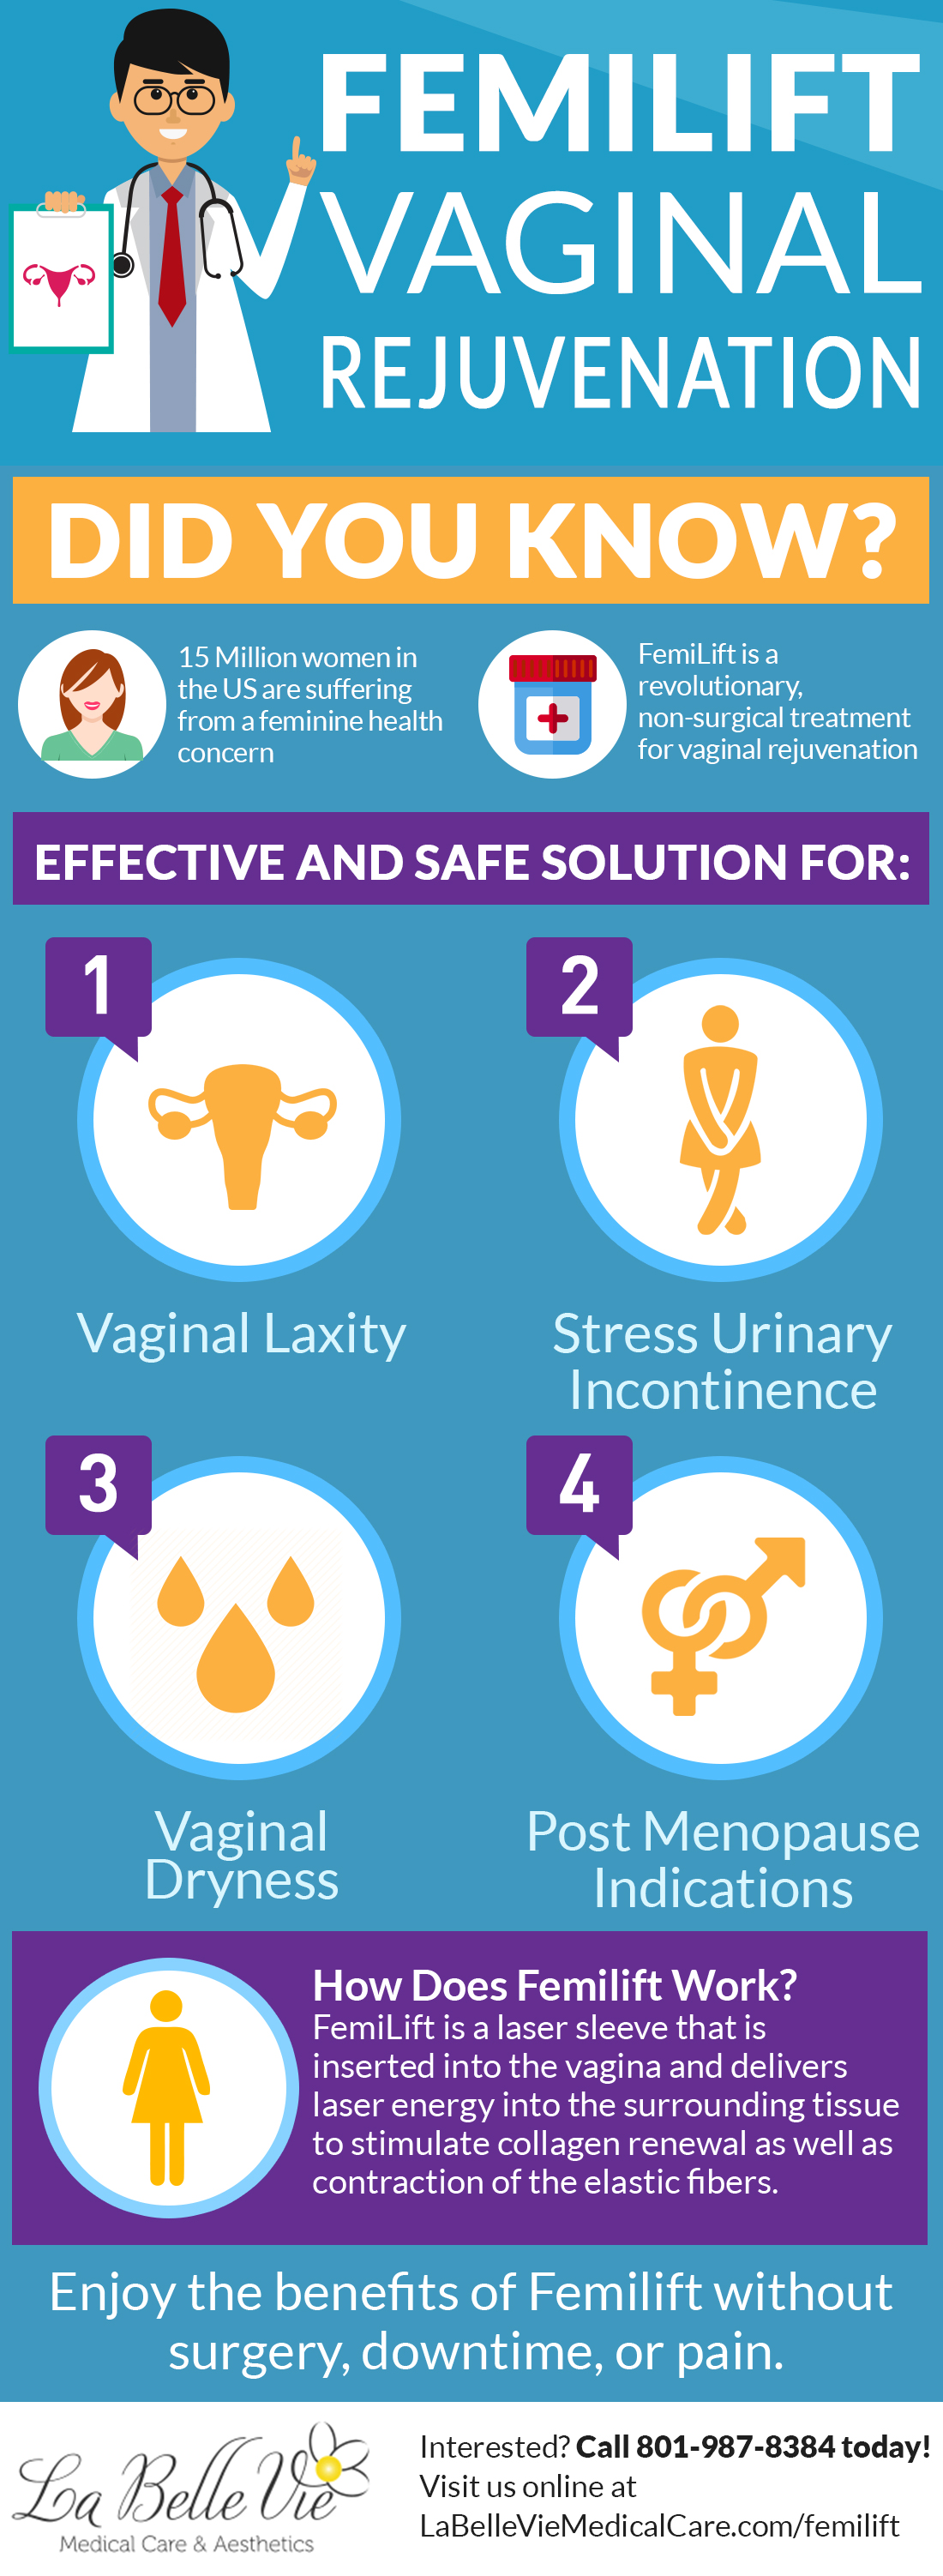 Femilift-vaginal-rejuvenation-utah-infographic